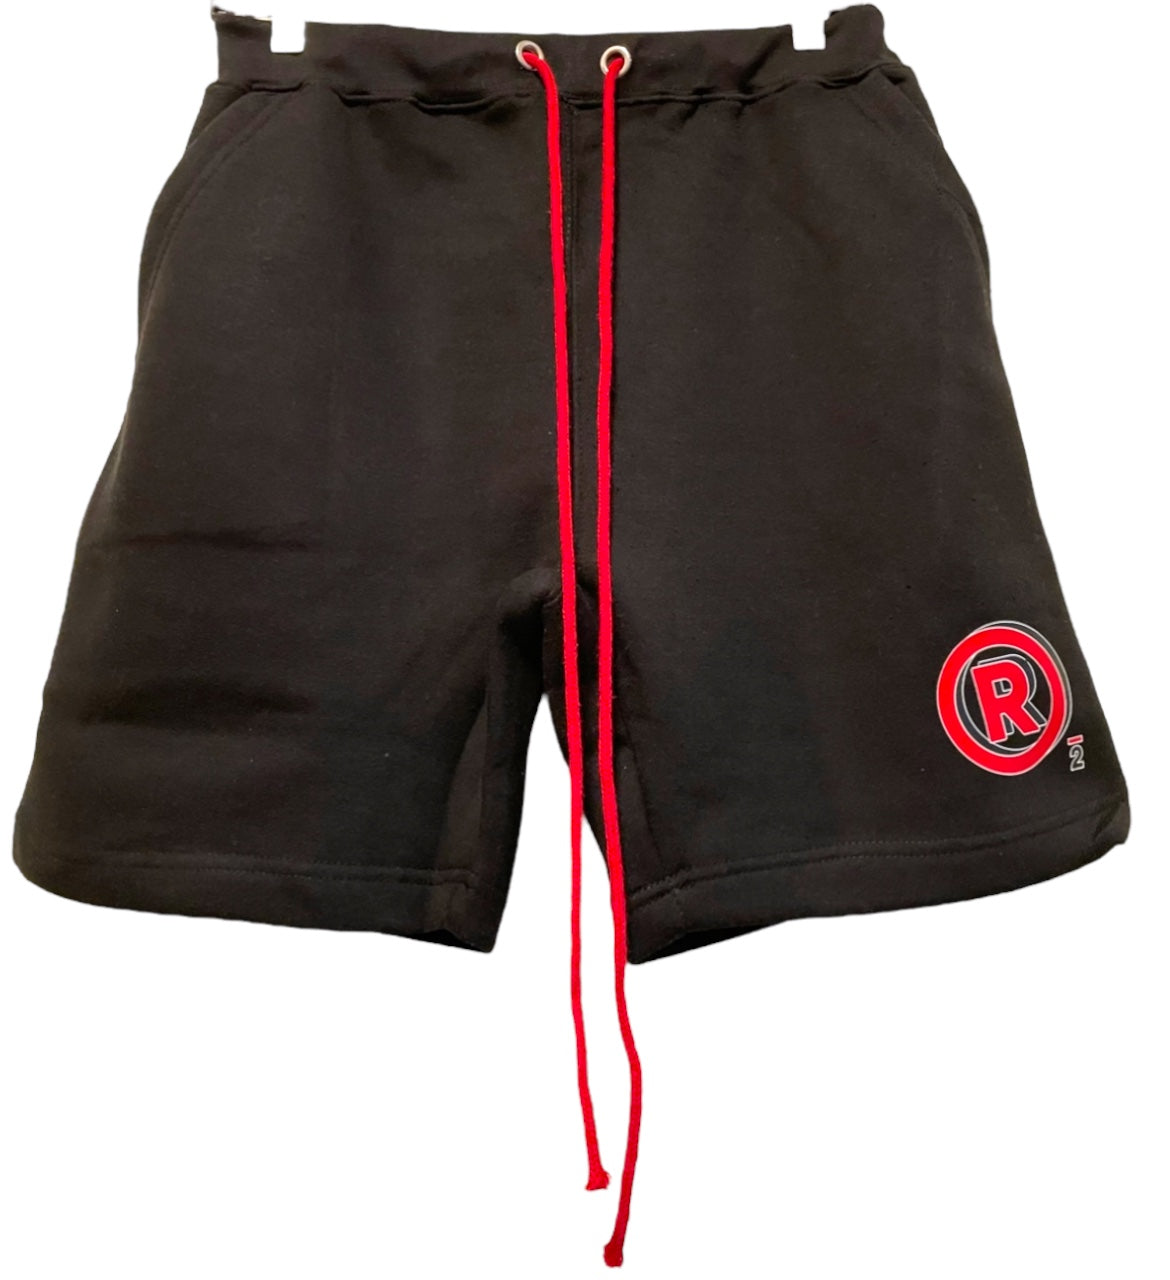 Black R logo shorts